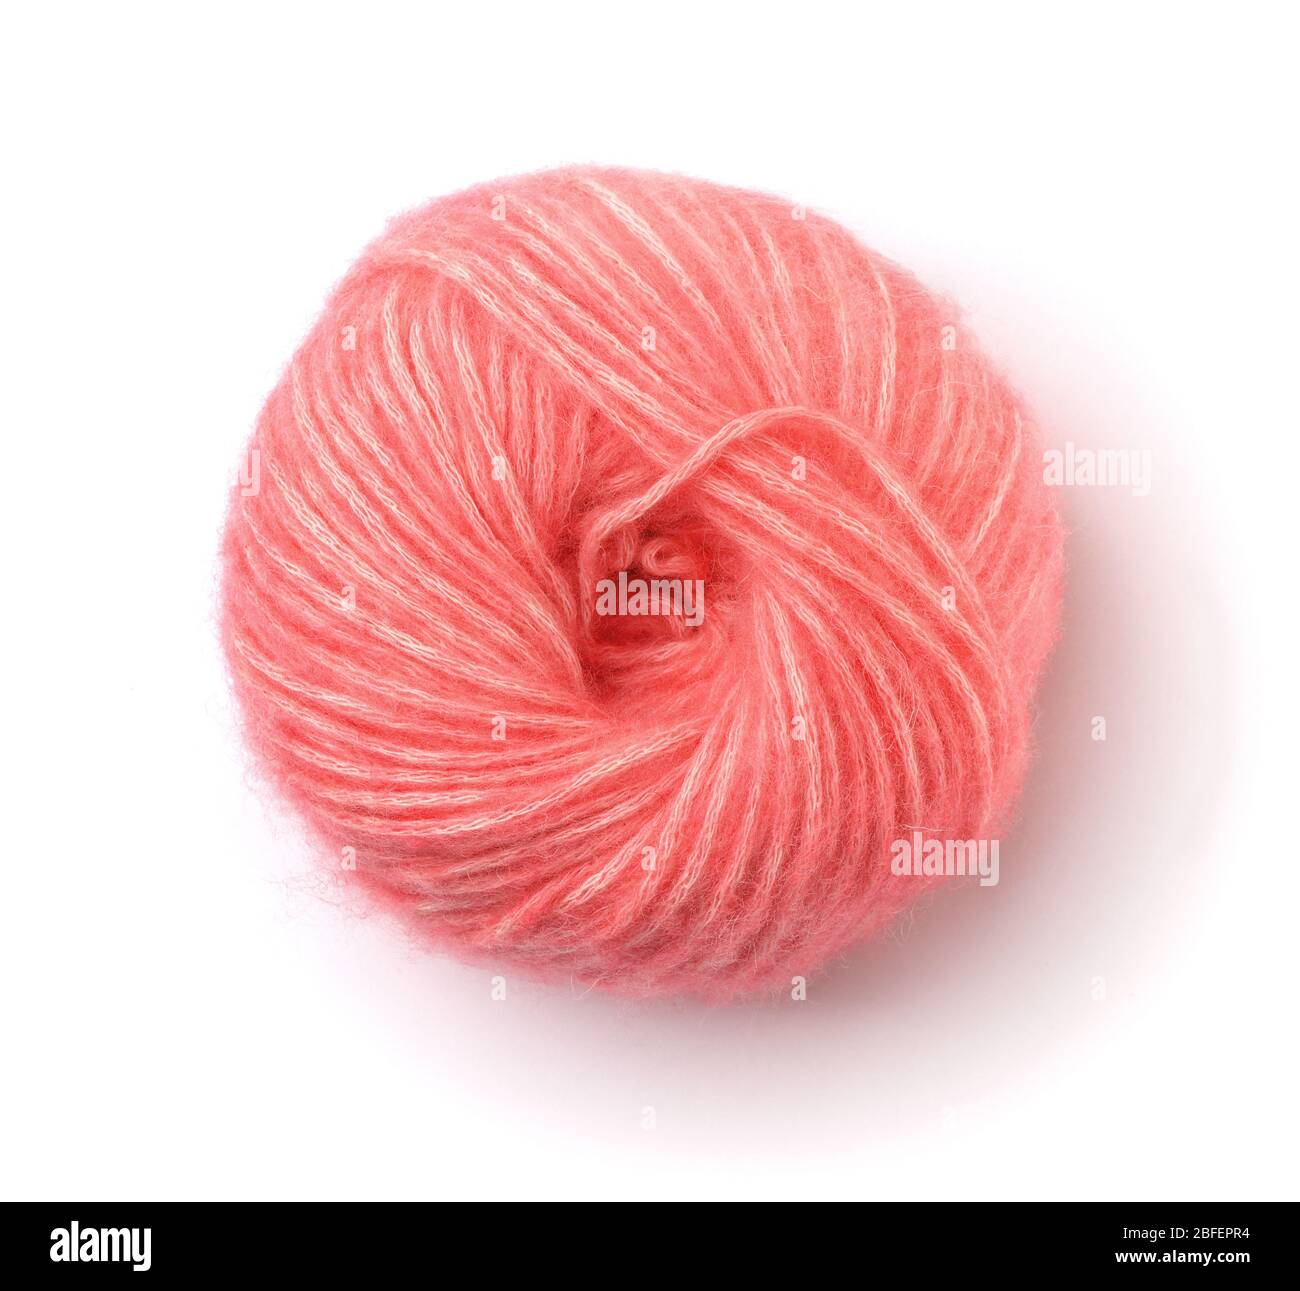 Vue de dessus de la boule de fil rose moelleuse isolée sur blanc Banque D'Images